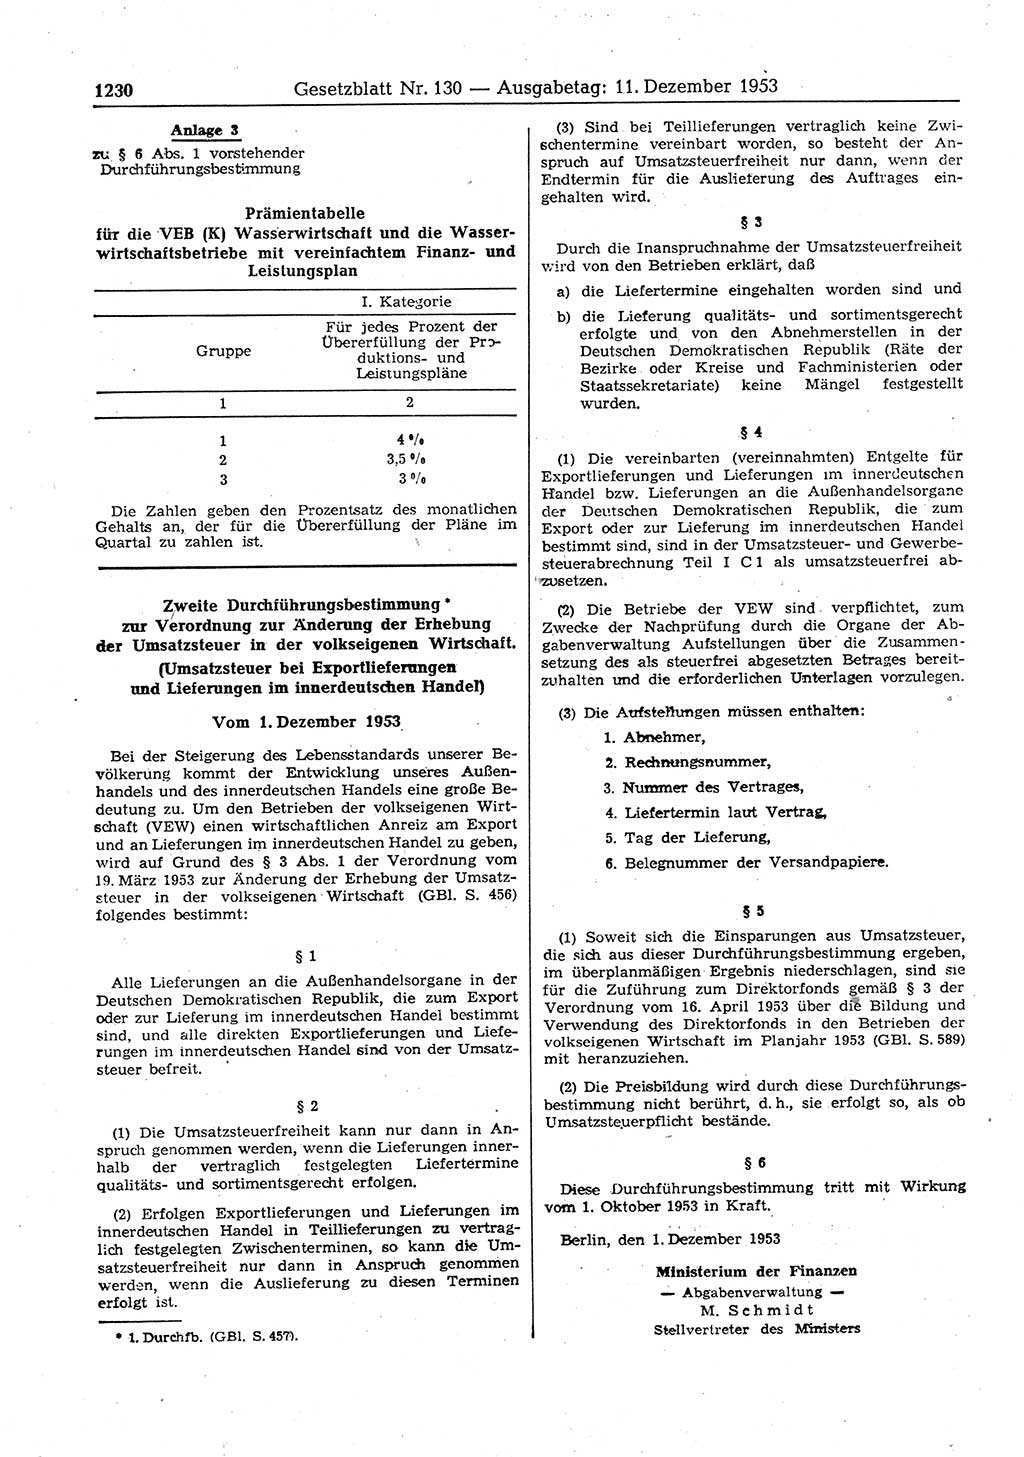 Gesetzblatt (GBl.) der Deutschen Demokratischen Republik (DDR) 1953, Seite 1230 (GBl. DDR 1953, S. 1230)